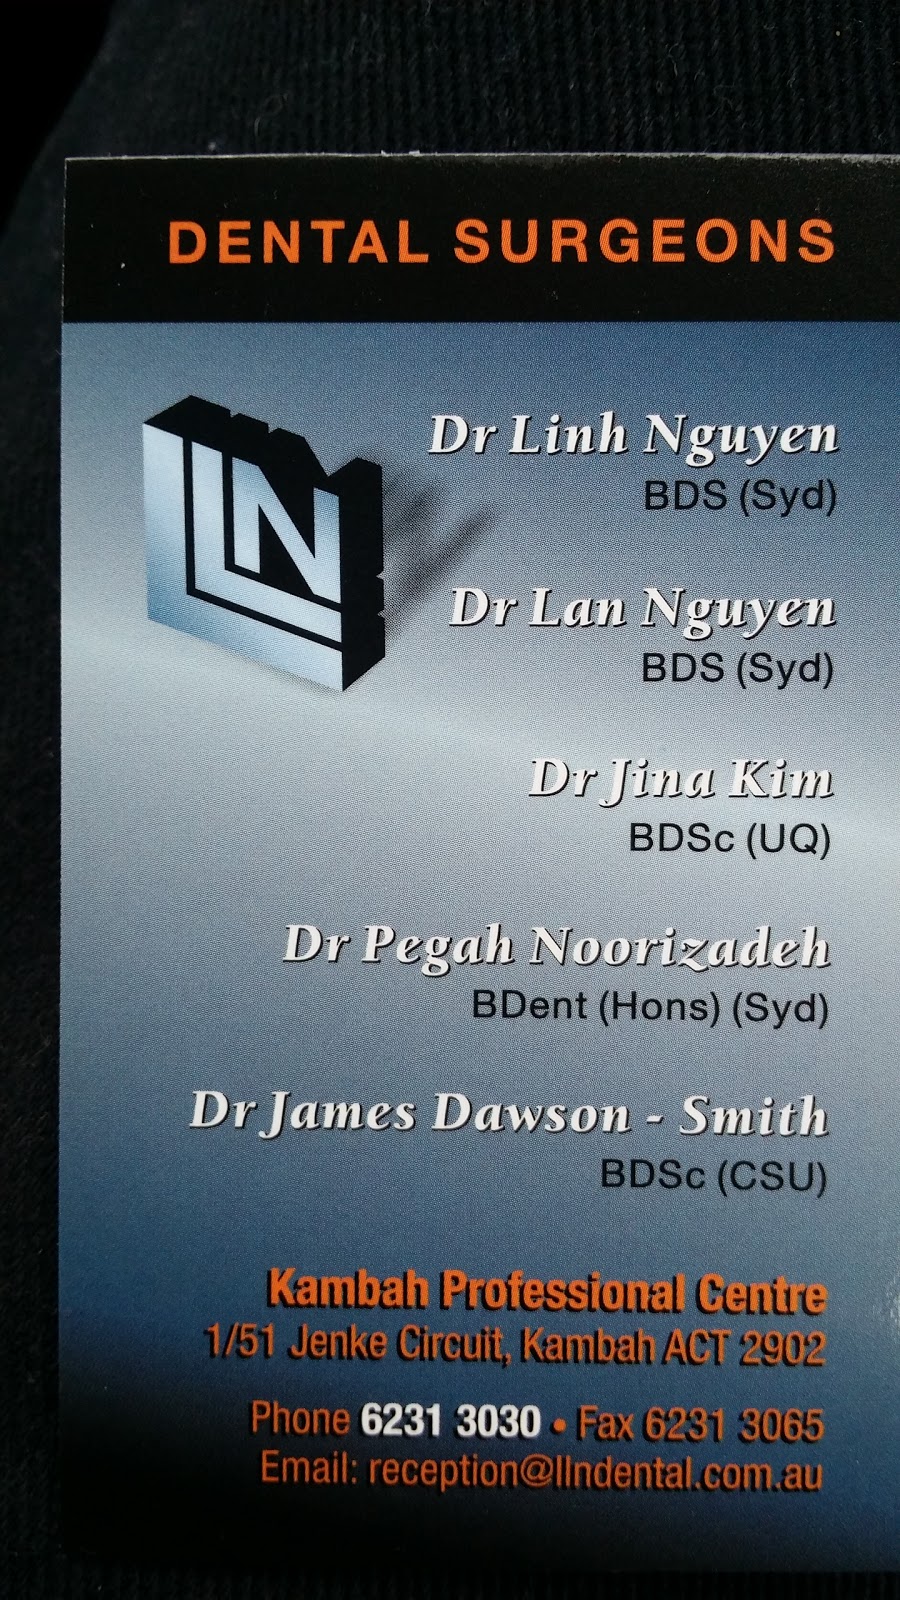 DR Linh & Lan Nguyen | Kambah Professional Centre, Unit 1 / 51 Jenke Circuit, Kambah ACT 2902, Australia | Phone: (02) 6231 3030